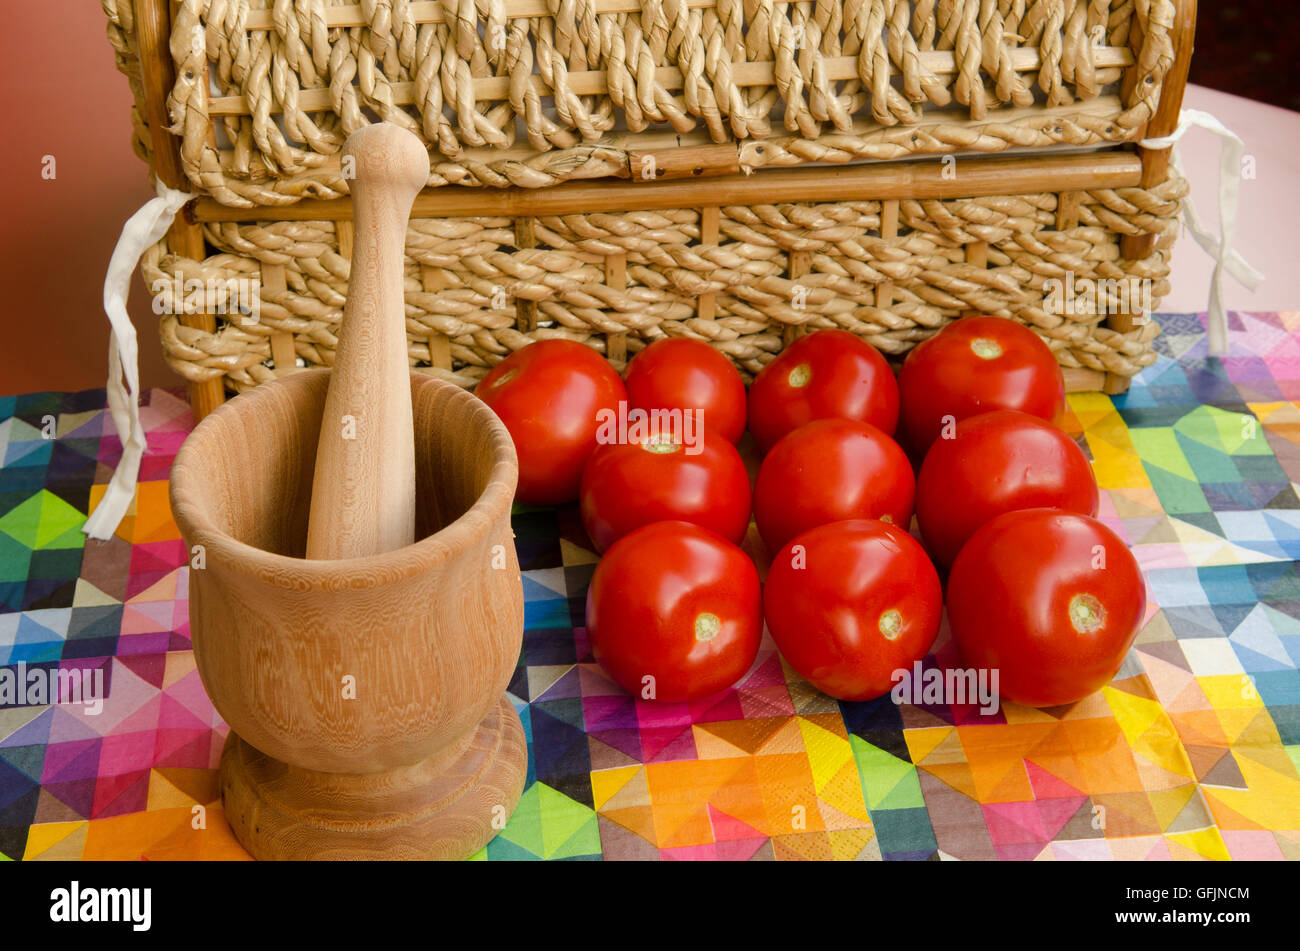 Los tomates apilados contra una cesta tejida con mortero de madera Foto de stock